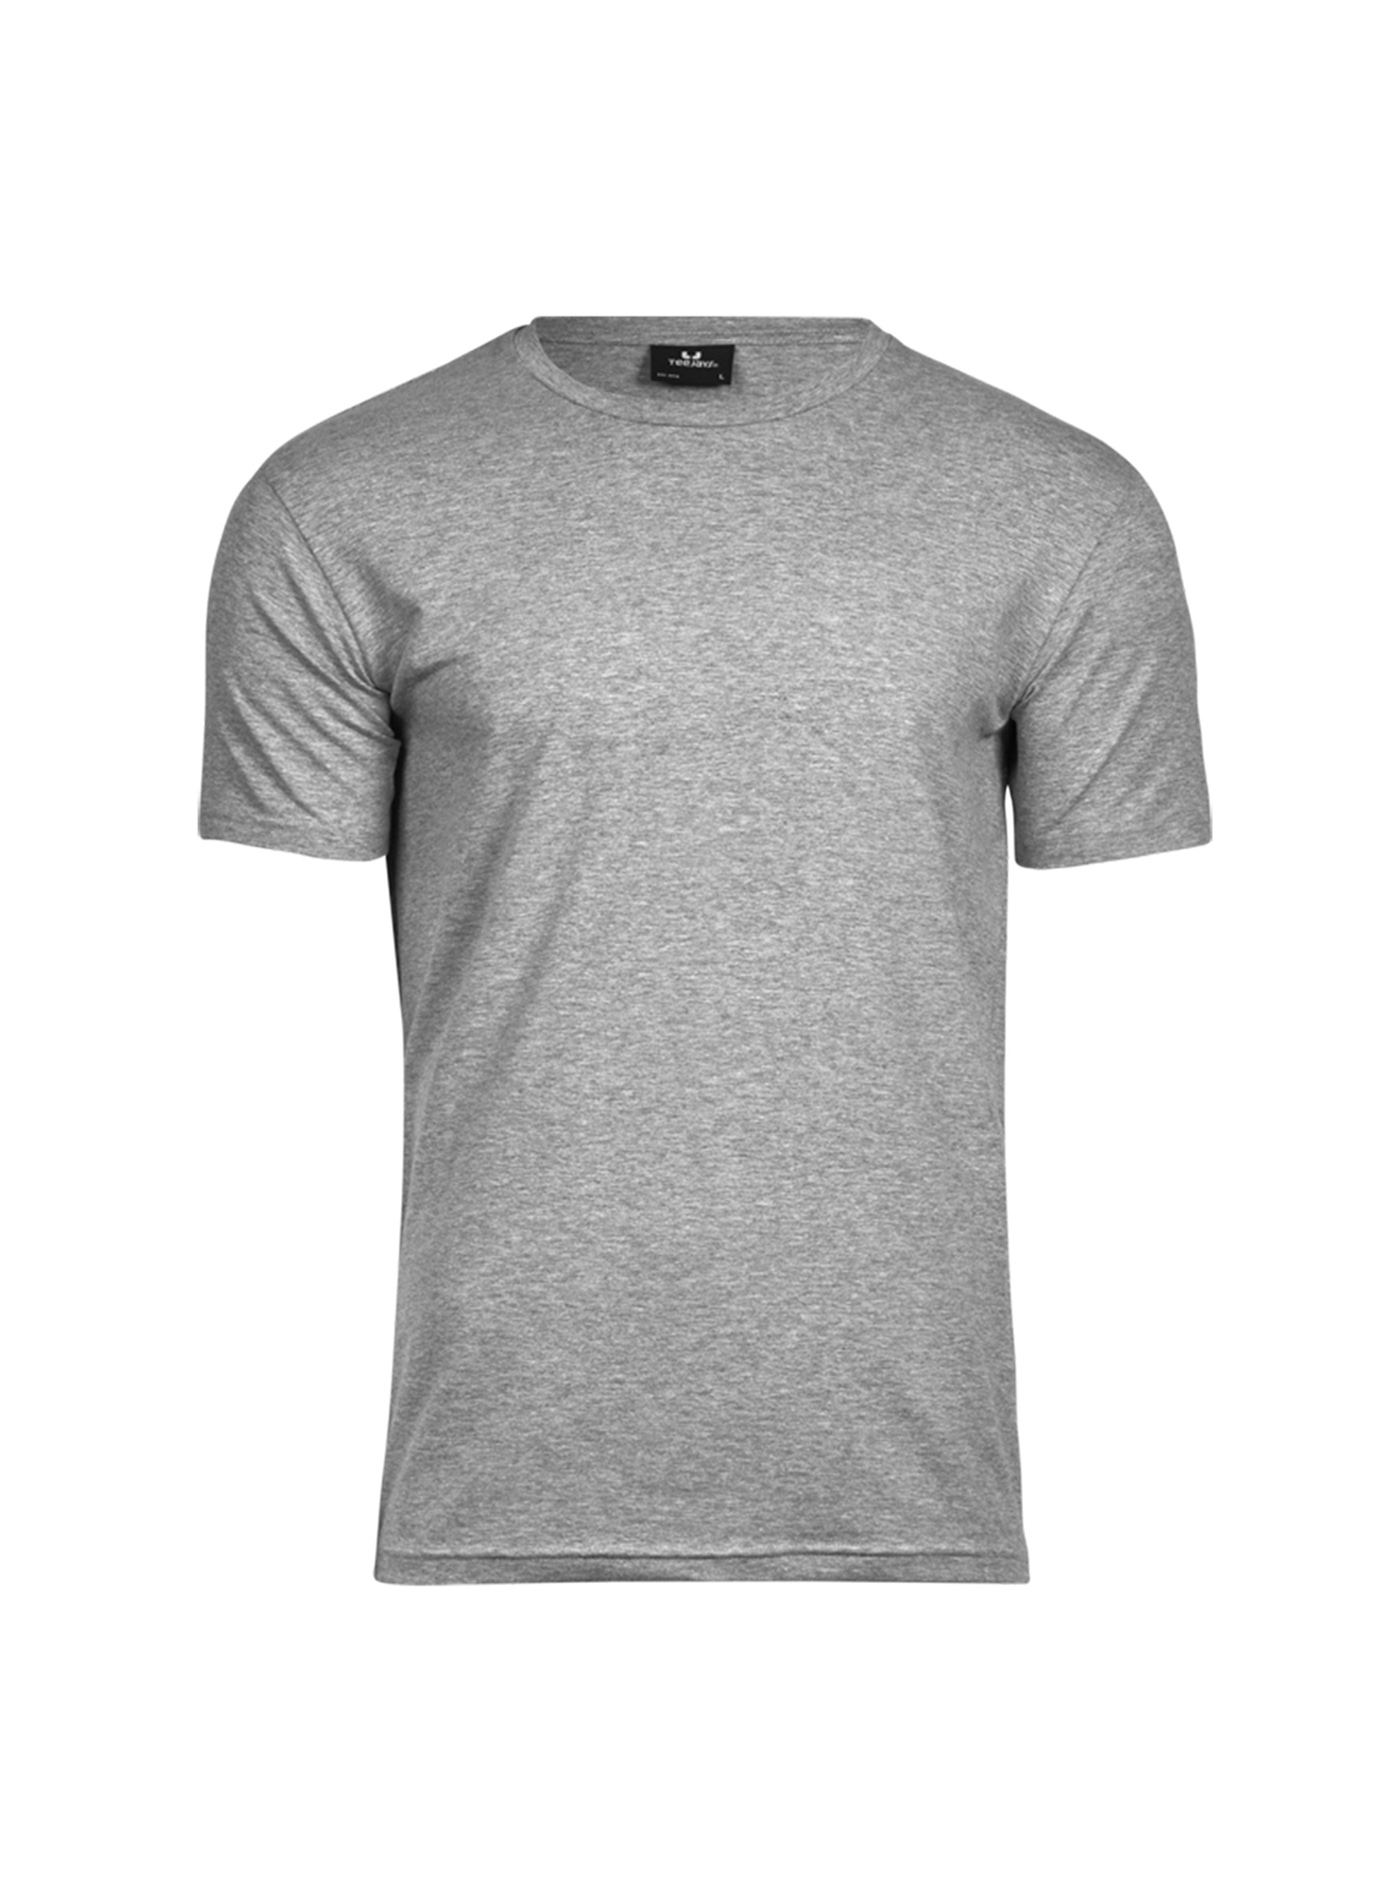 Pánské tričko Tee Jays Stretch - šedý melír M